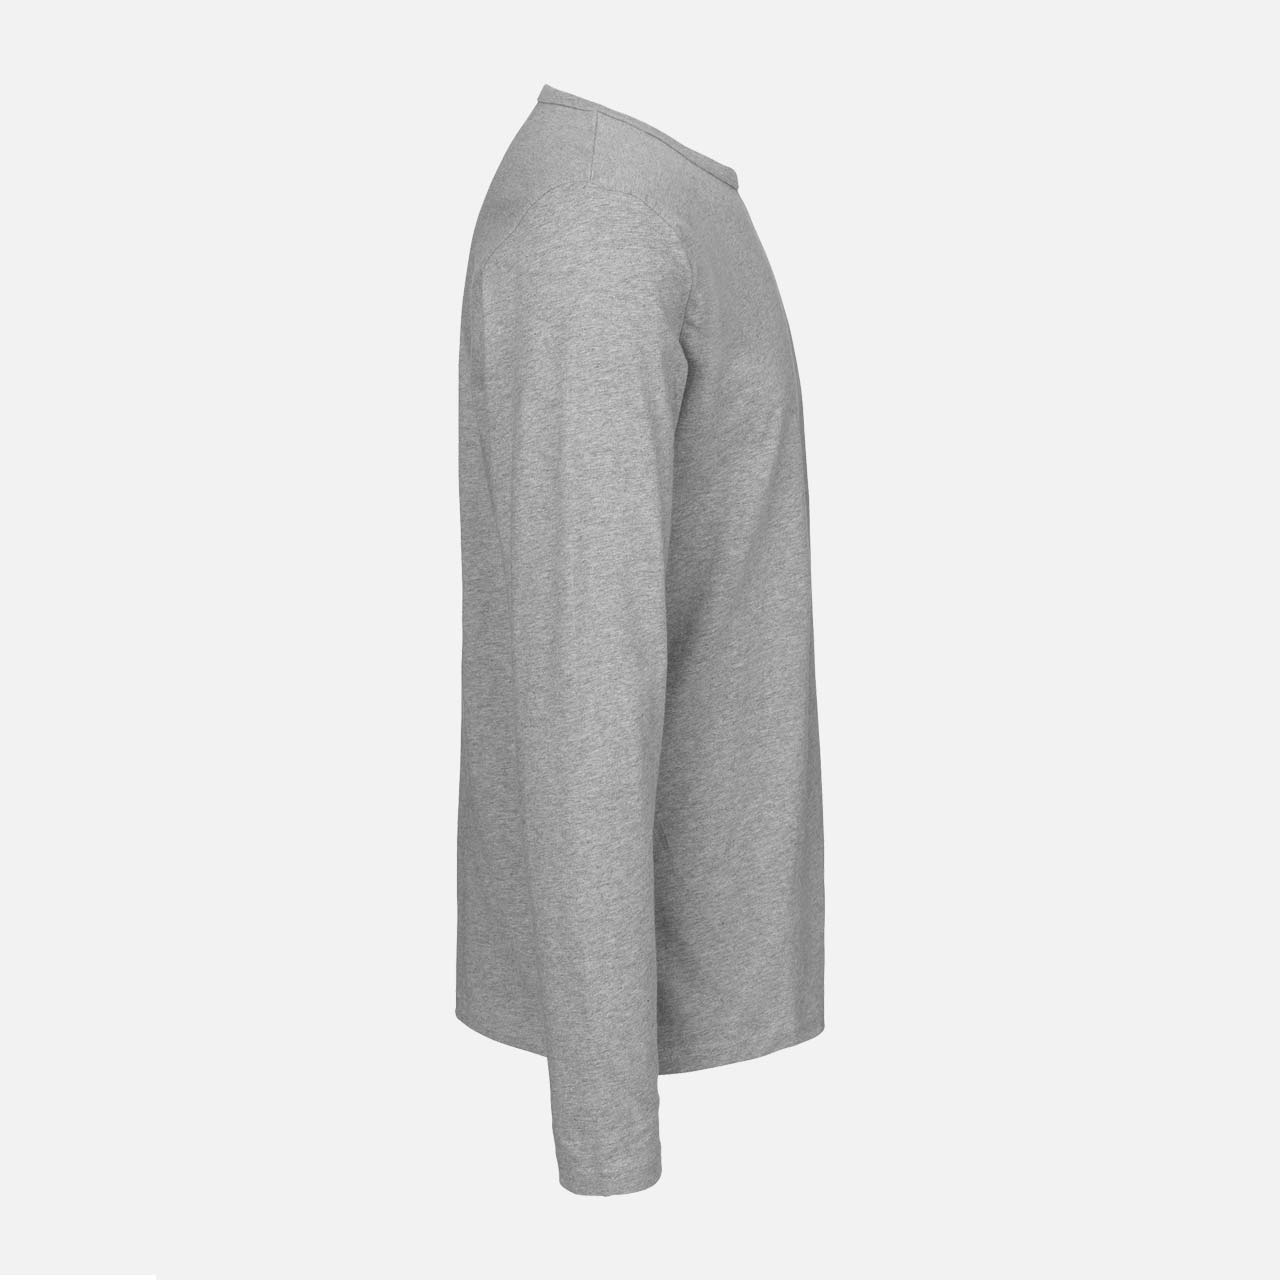 Mens Long Sleeve Shirt - Bio Baumwolle - Sport Grey XL Sports Grey